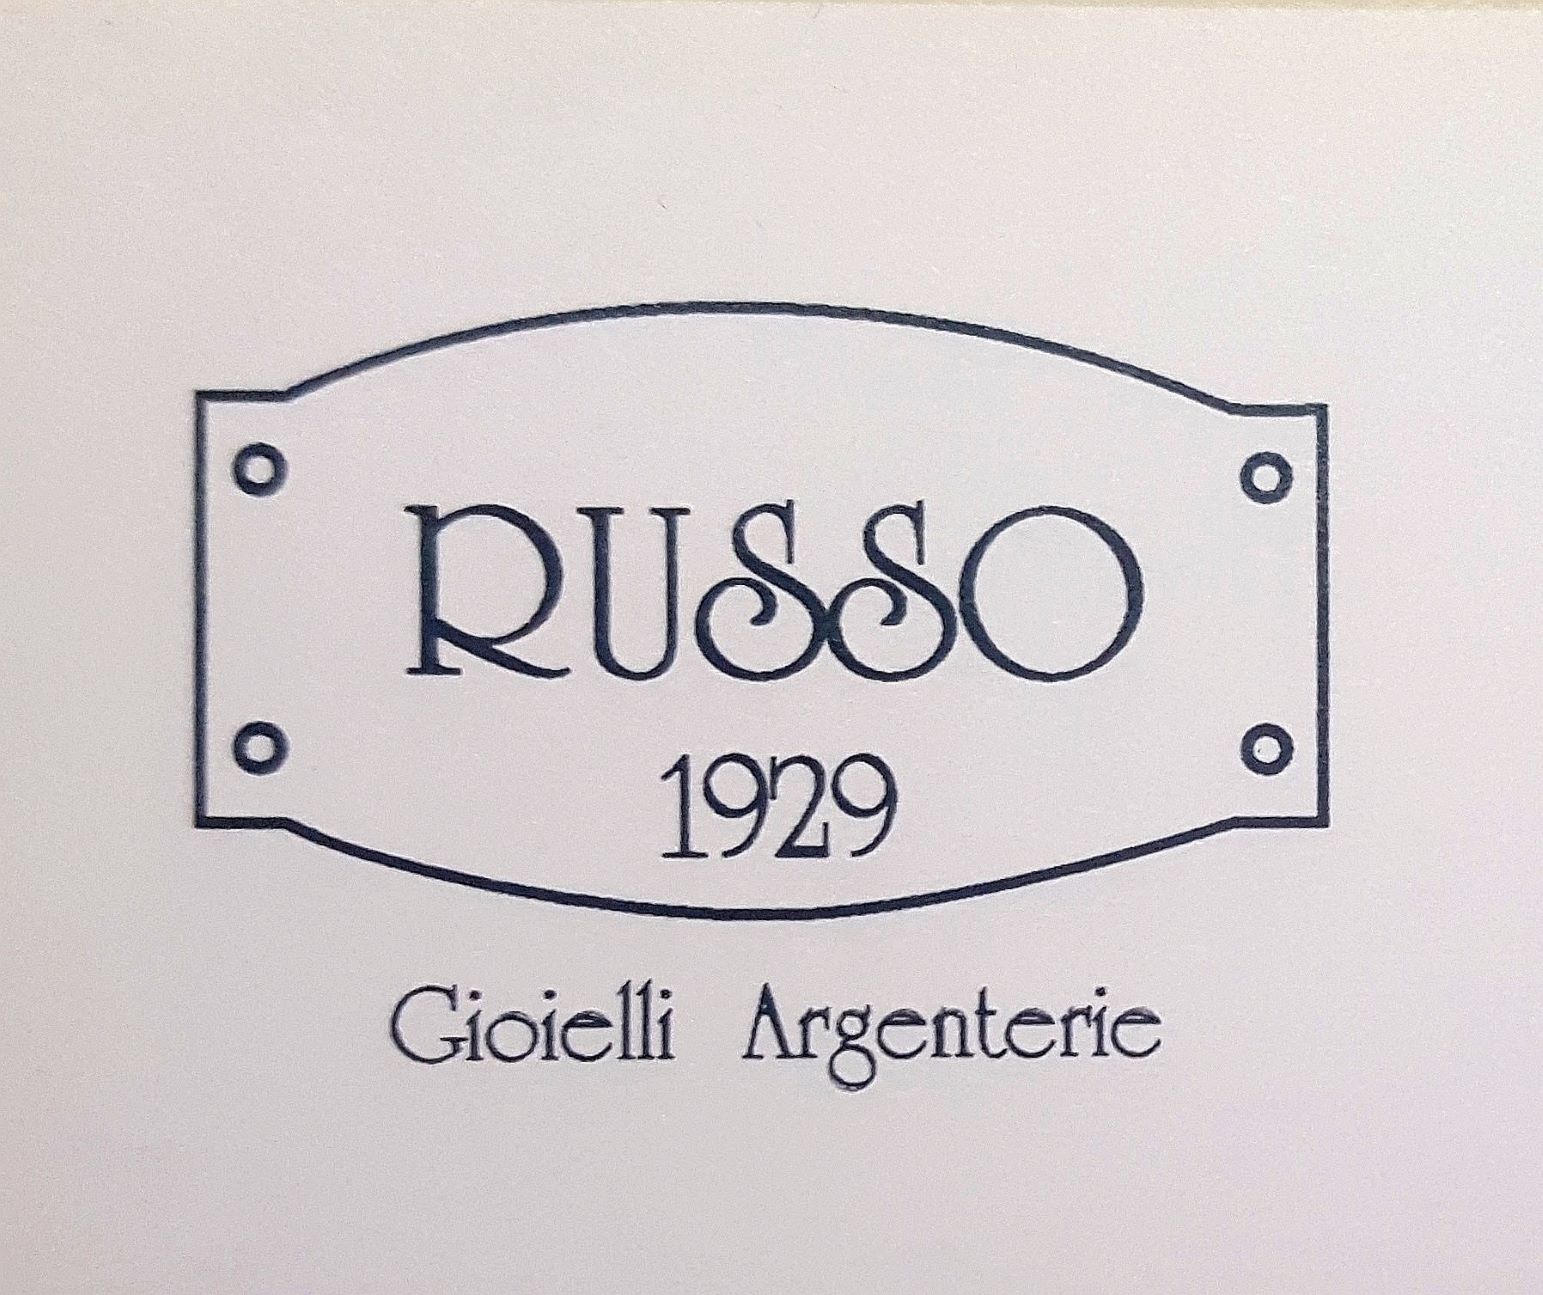 Russo Gioielli e Argenteria 1929